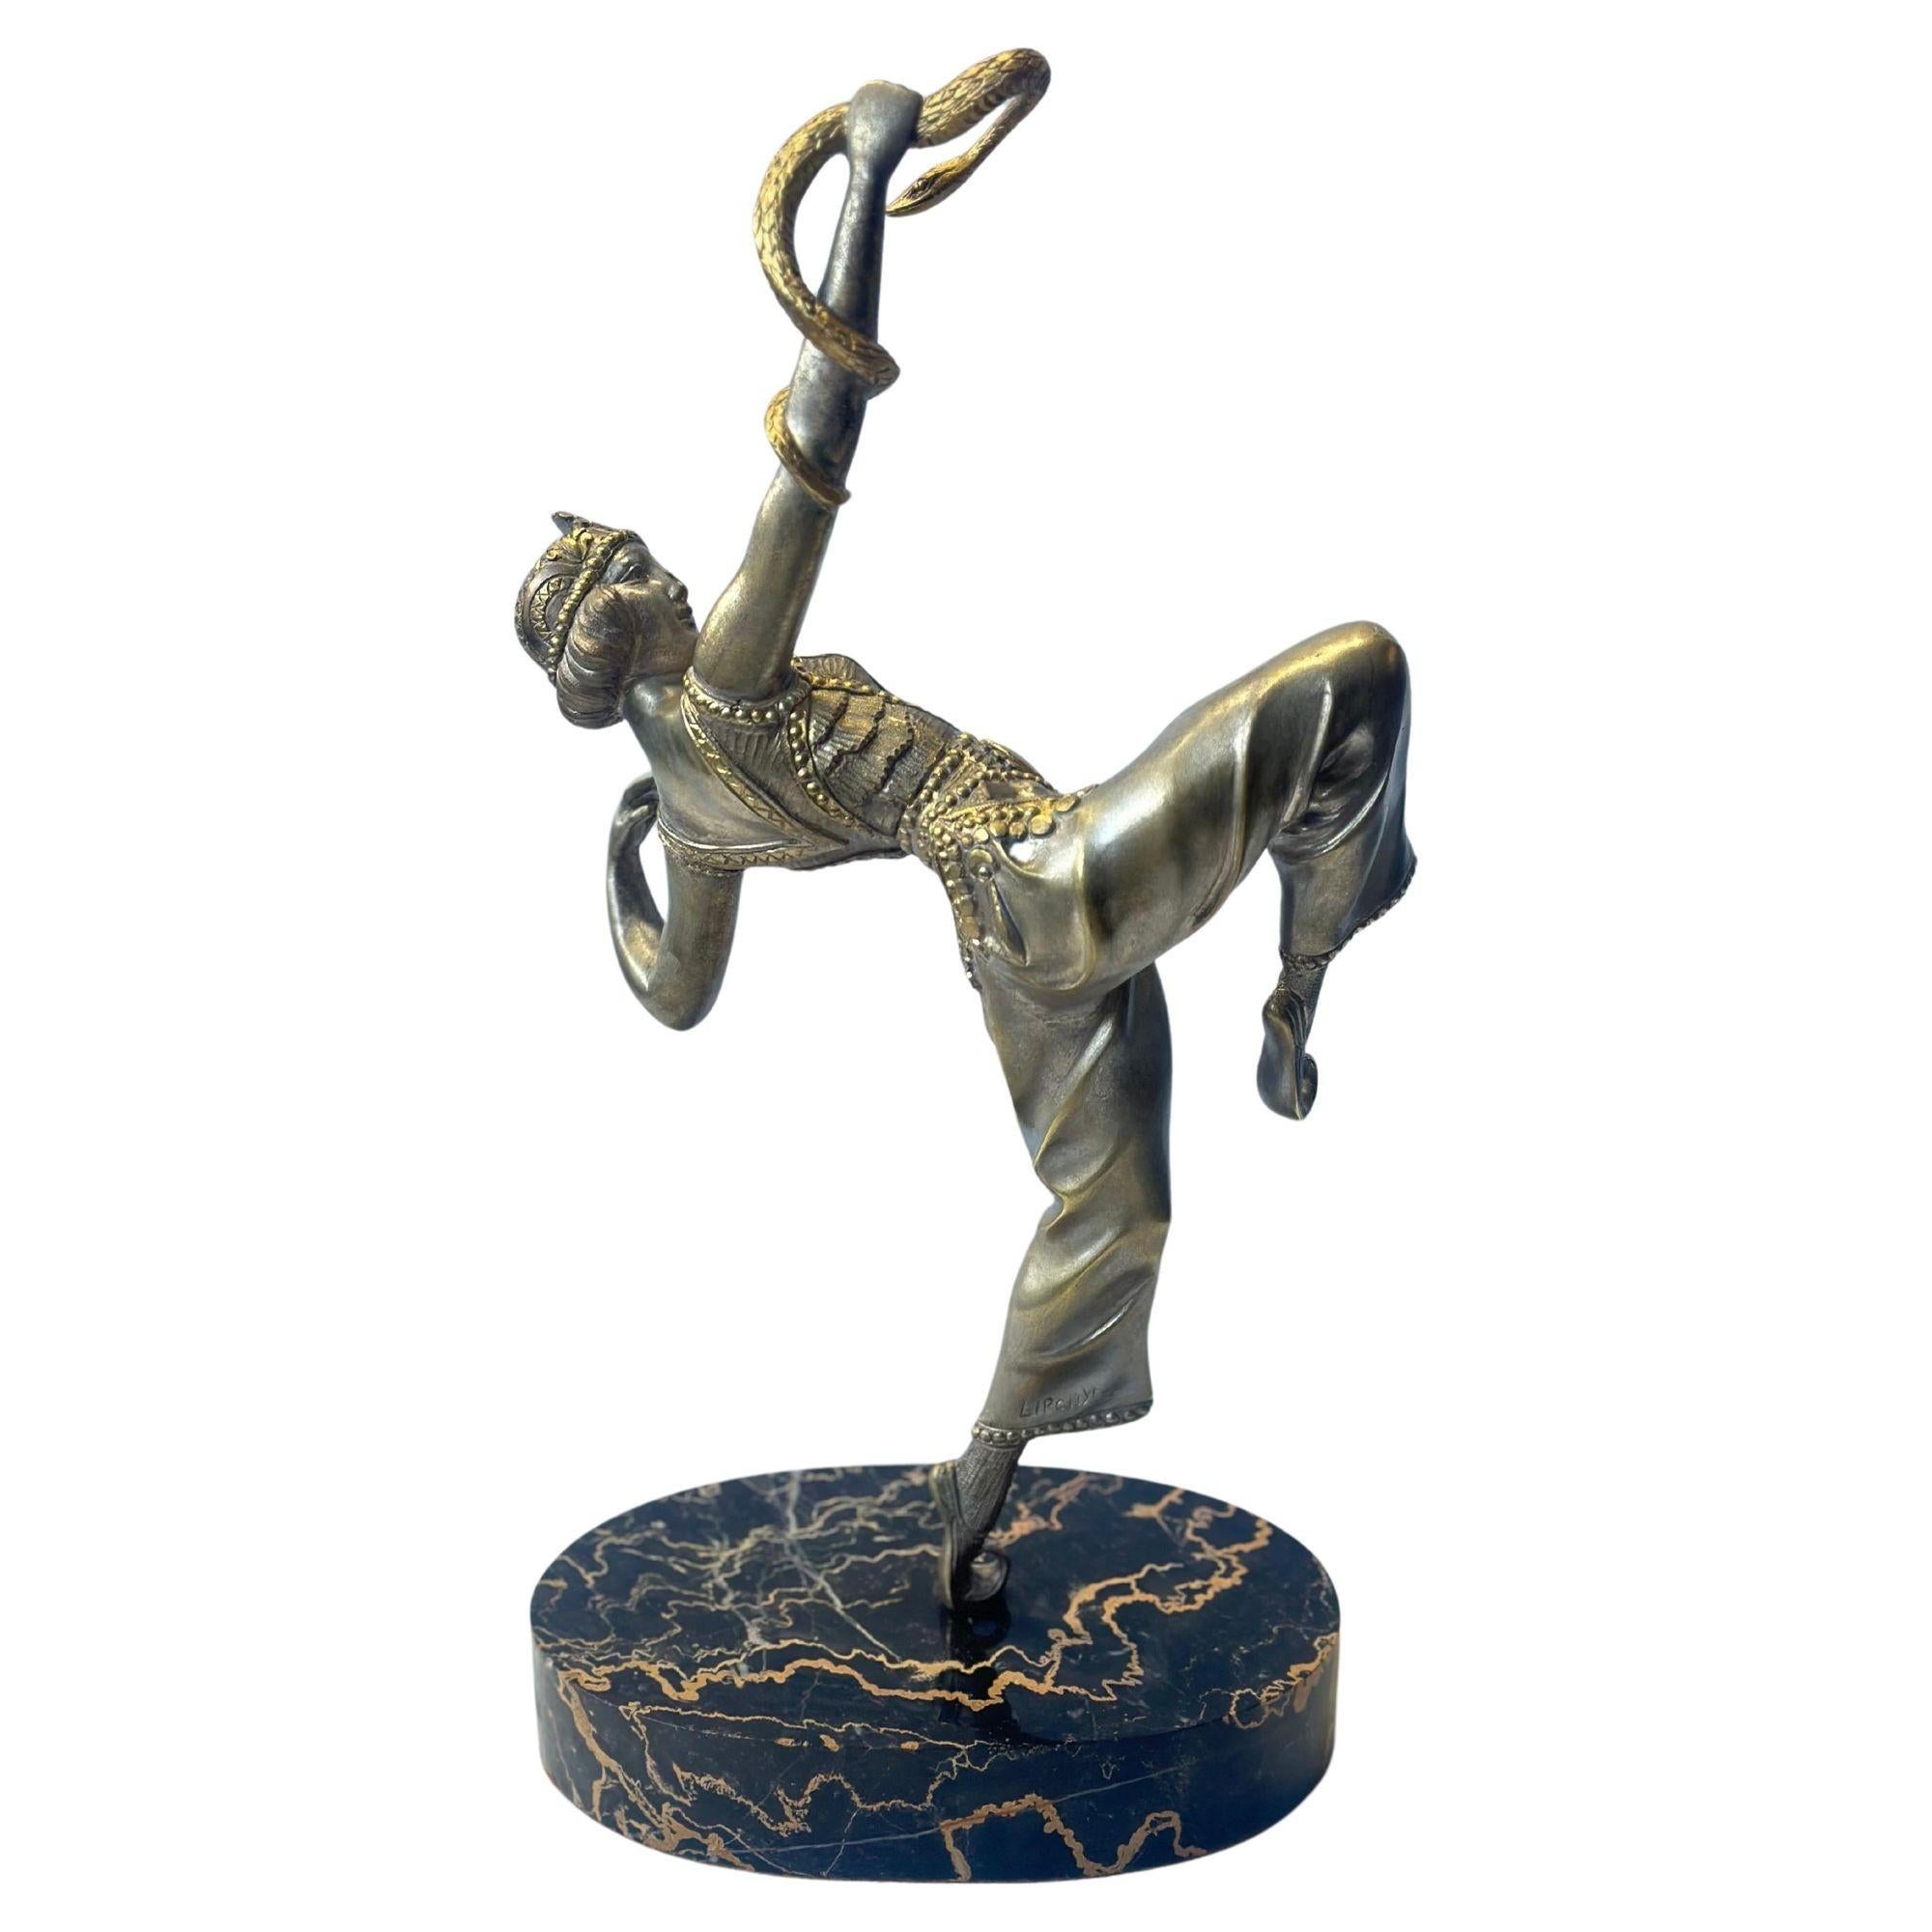 Sculpture en bronze patiné Art déco français représentant une danseuse orientale charmeuse de serpents prenant une pose séduisante, un serpent s'enroulant autour de son bras. Il repose sur un socle ovale en marbre noir veiné. Fabriqué par Samuel